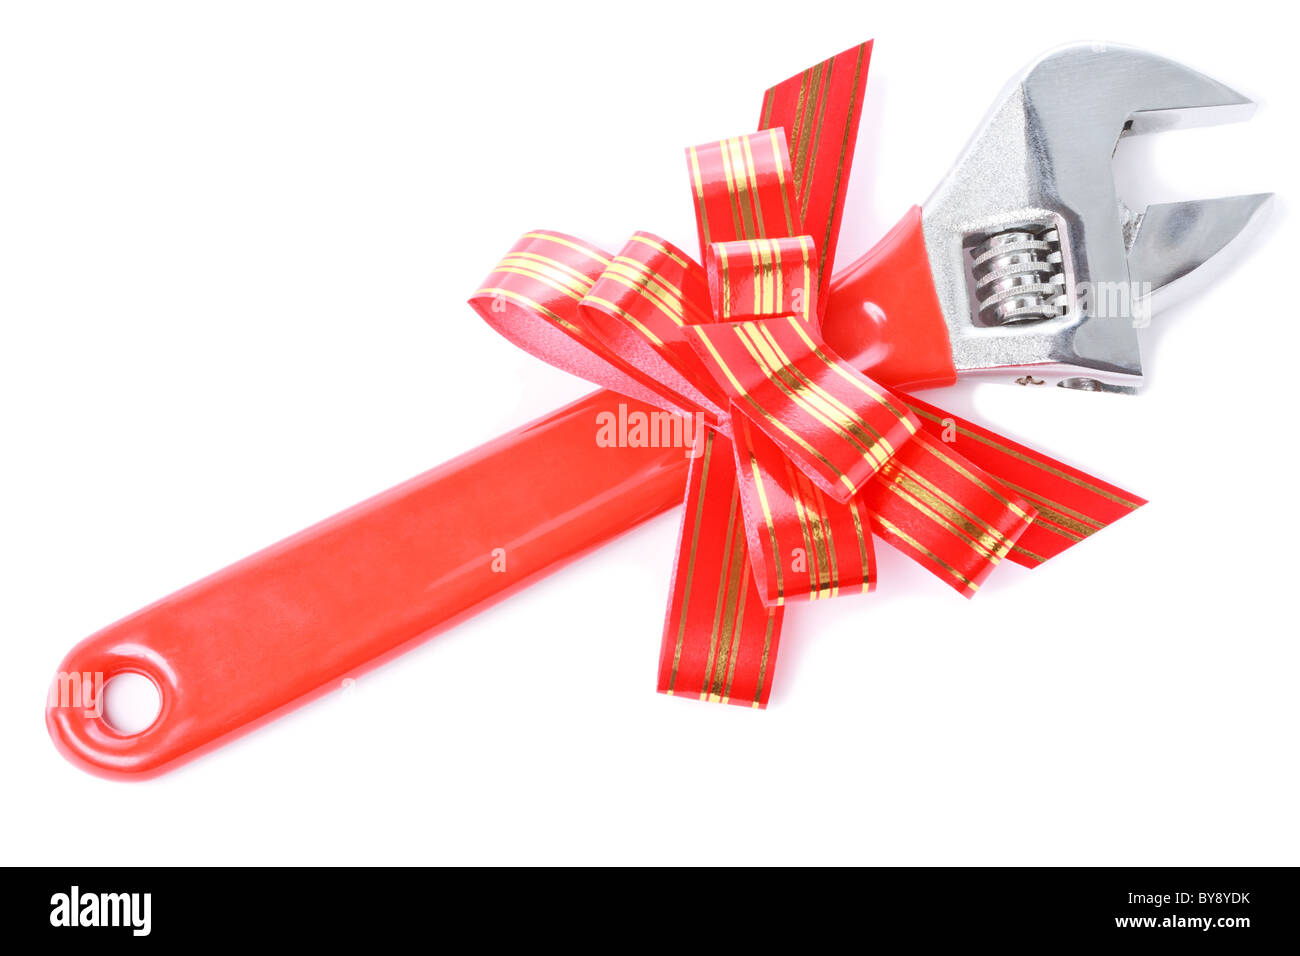 Llave de acero con asa de plástico rojo y rojo a rayas goldish arco como un regalo para manitas aislado sobre fondo blanco. Foto de stock